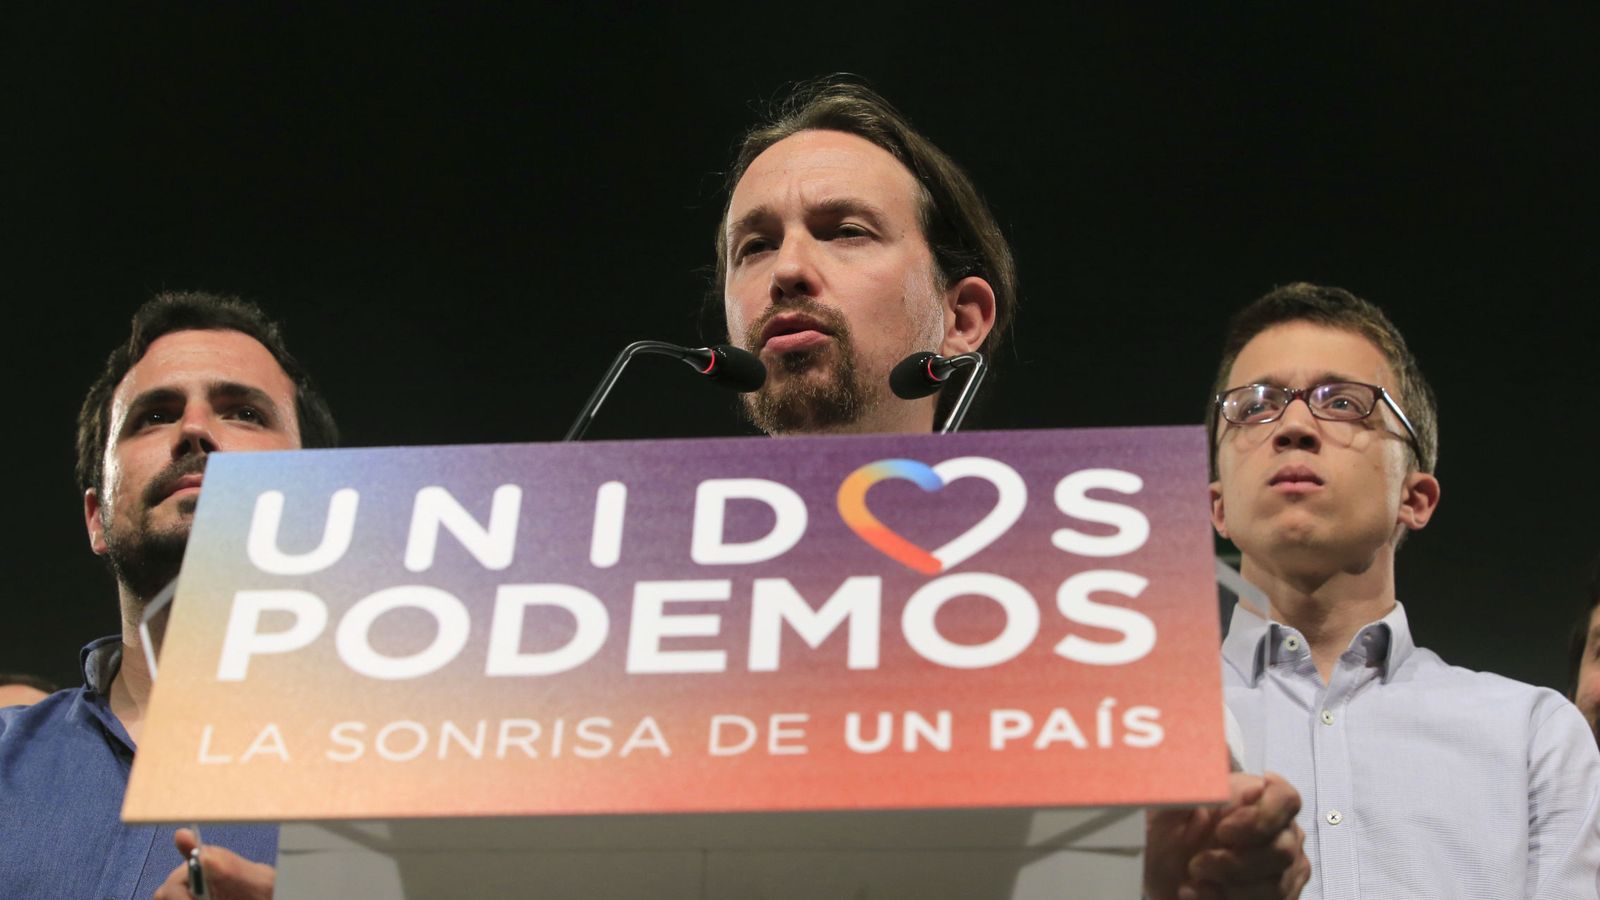 Foto: El líder de Unidos Podemos, Pablo Iglesias (c), acompañado por Alberto Garzón (i) e Íñigo Errejón (d), durante su comparecencia ante la prensa tras conocer los resultados de las elecciones generales. (EFE)